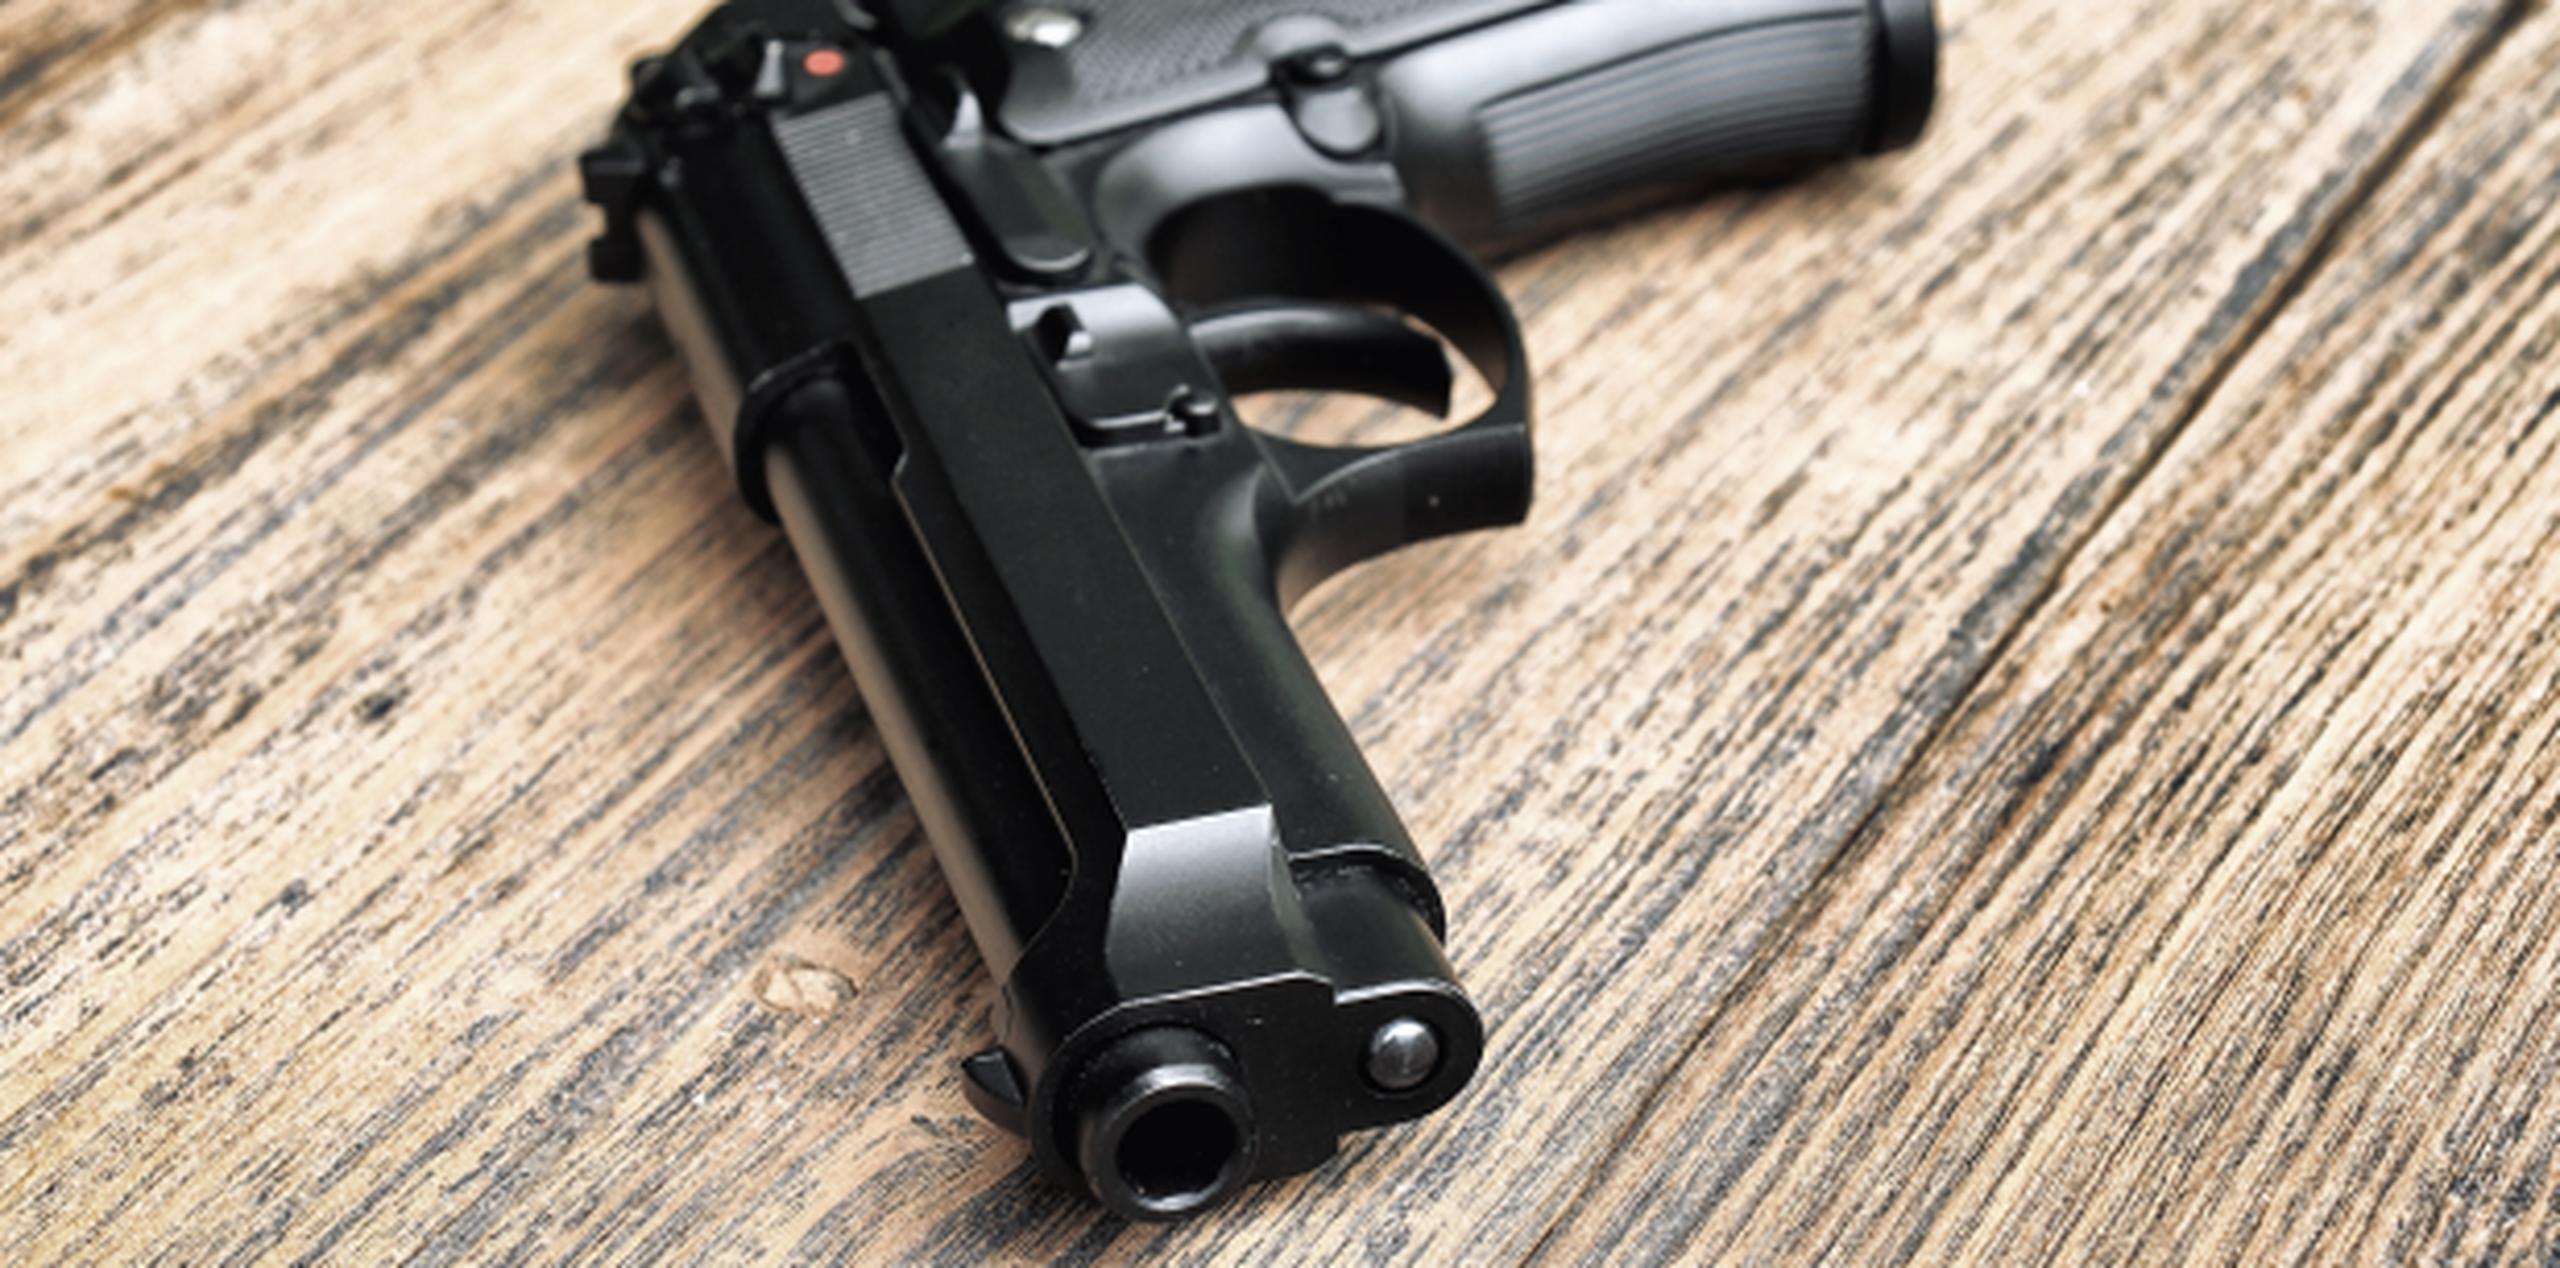 Los niños jugaban con el arma cuando accidentalmente se disparó, pegándole un tiro en la cara. (Shutterstock)